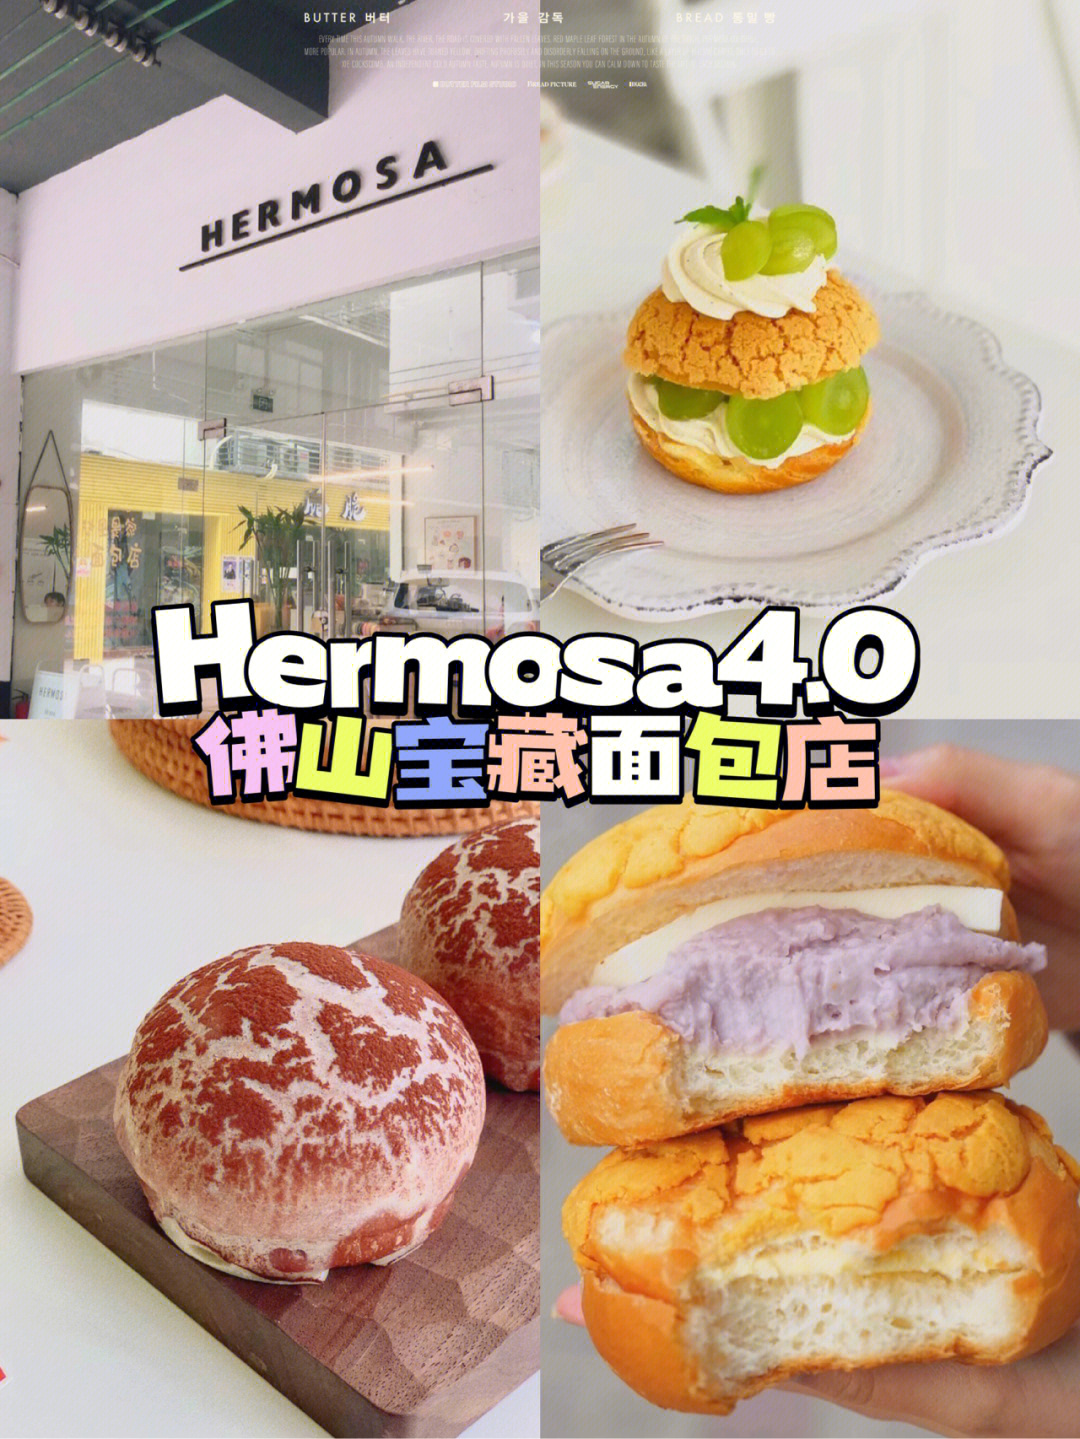 佛山宝藏面包店hermosa40